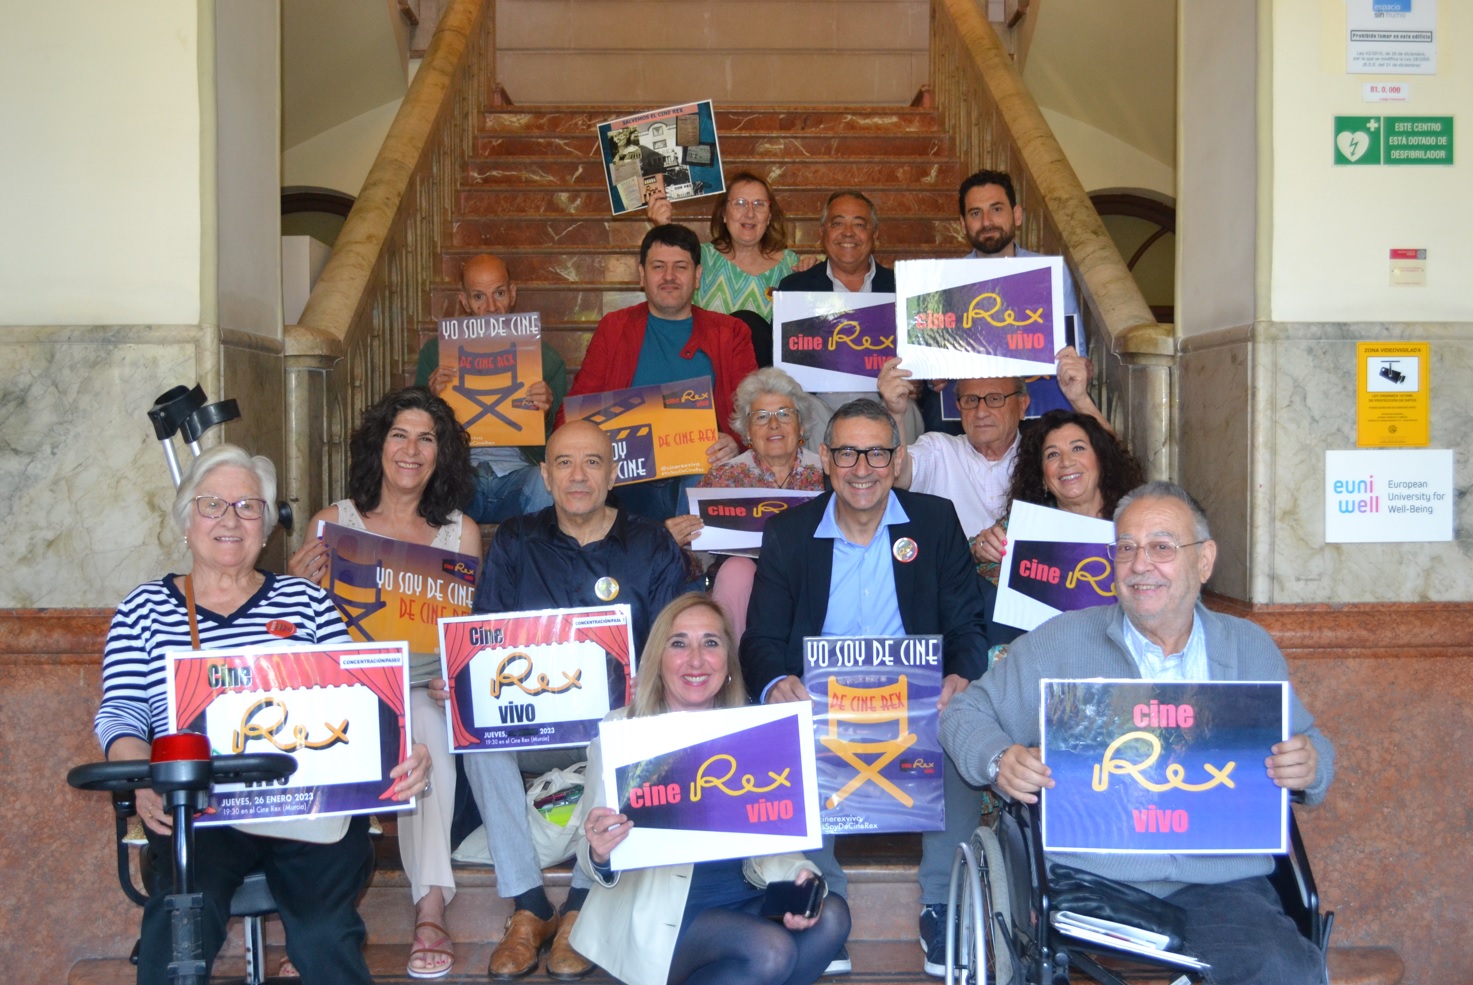 El Rector Luján muestra su solidaridad con la Plataforma Cine Rex Vivo